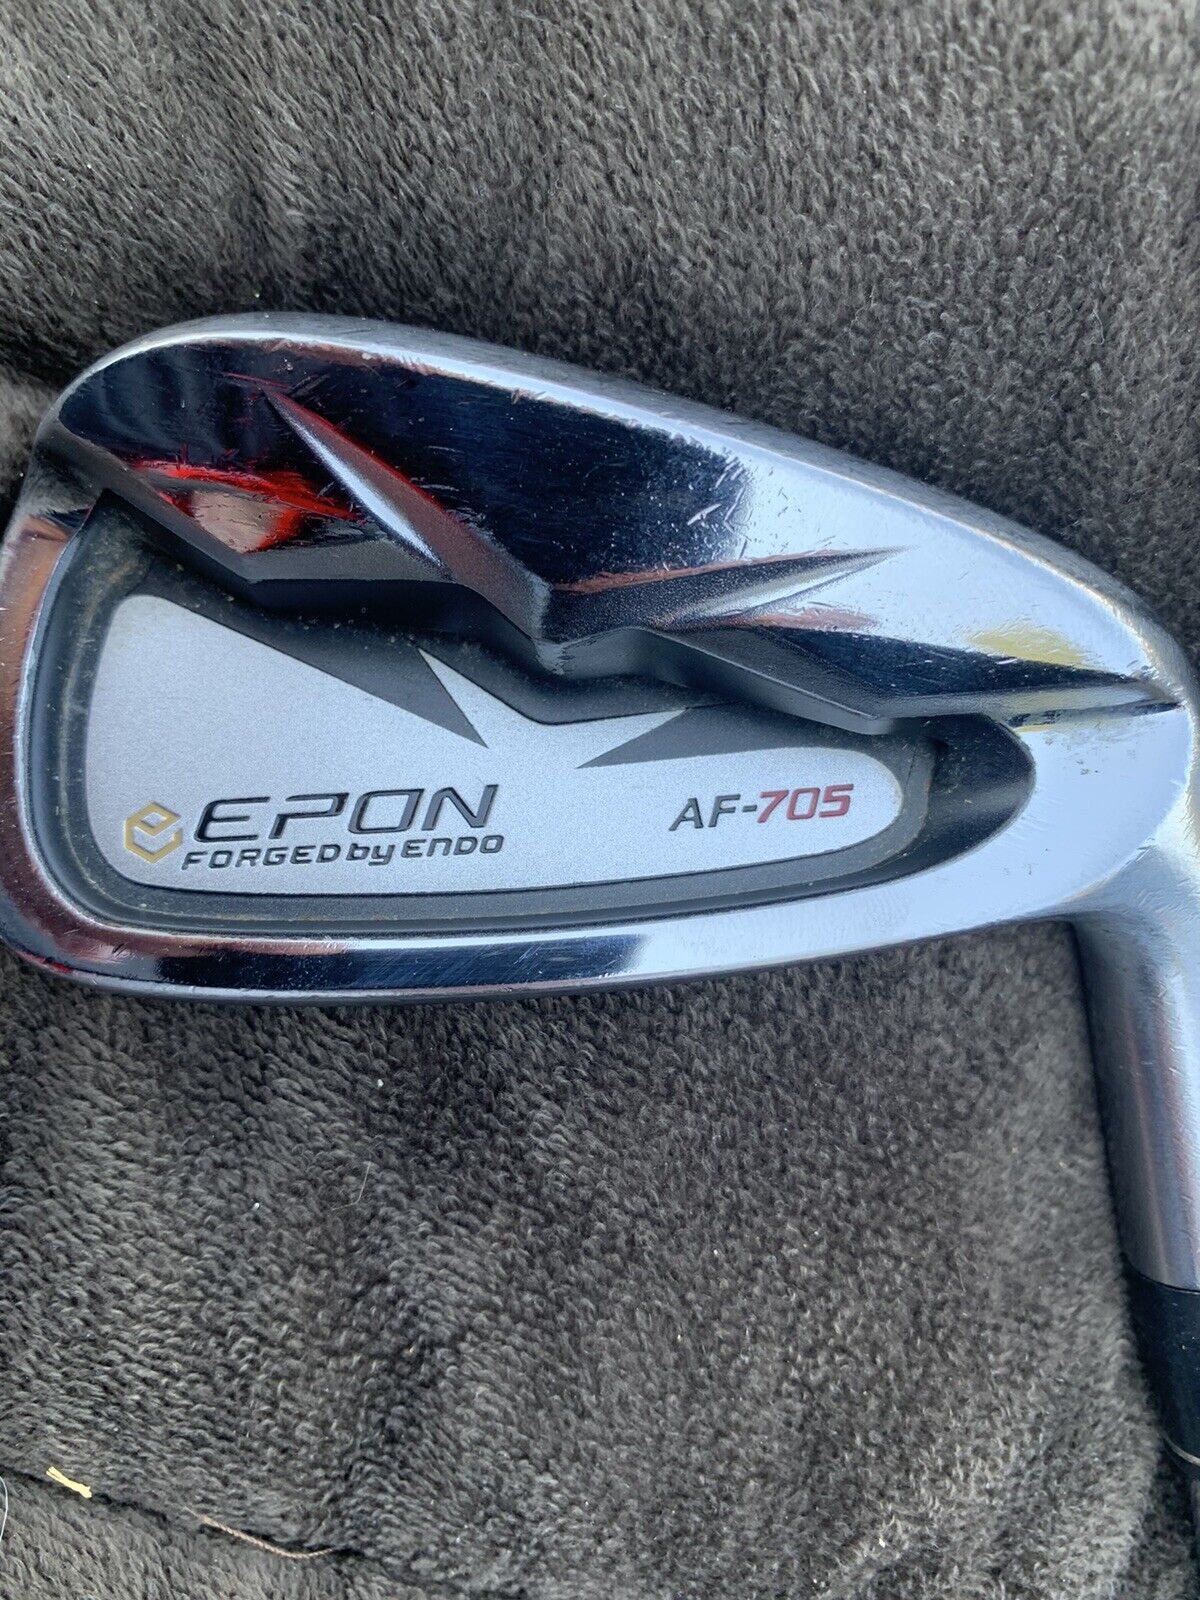 Epon AF-705 Iron Set